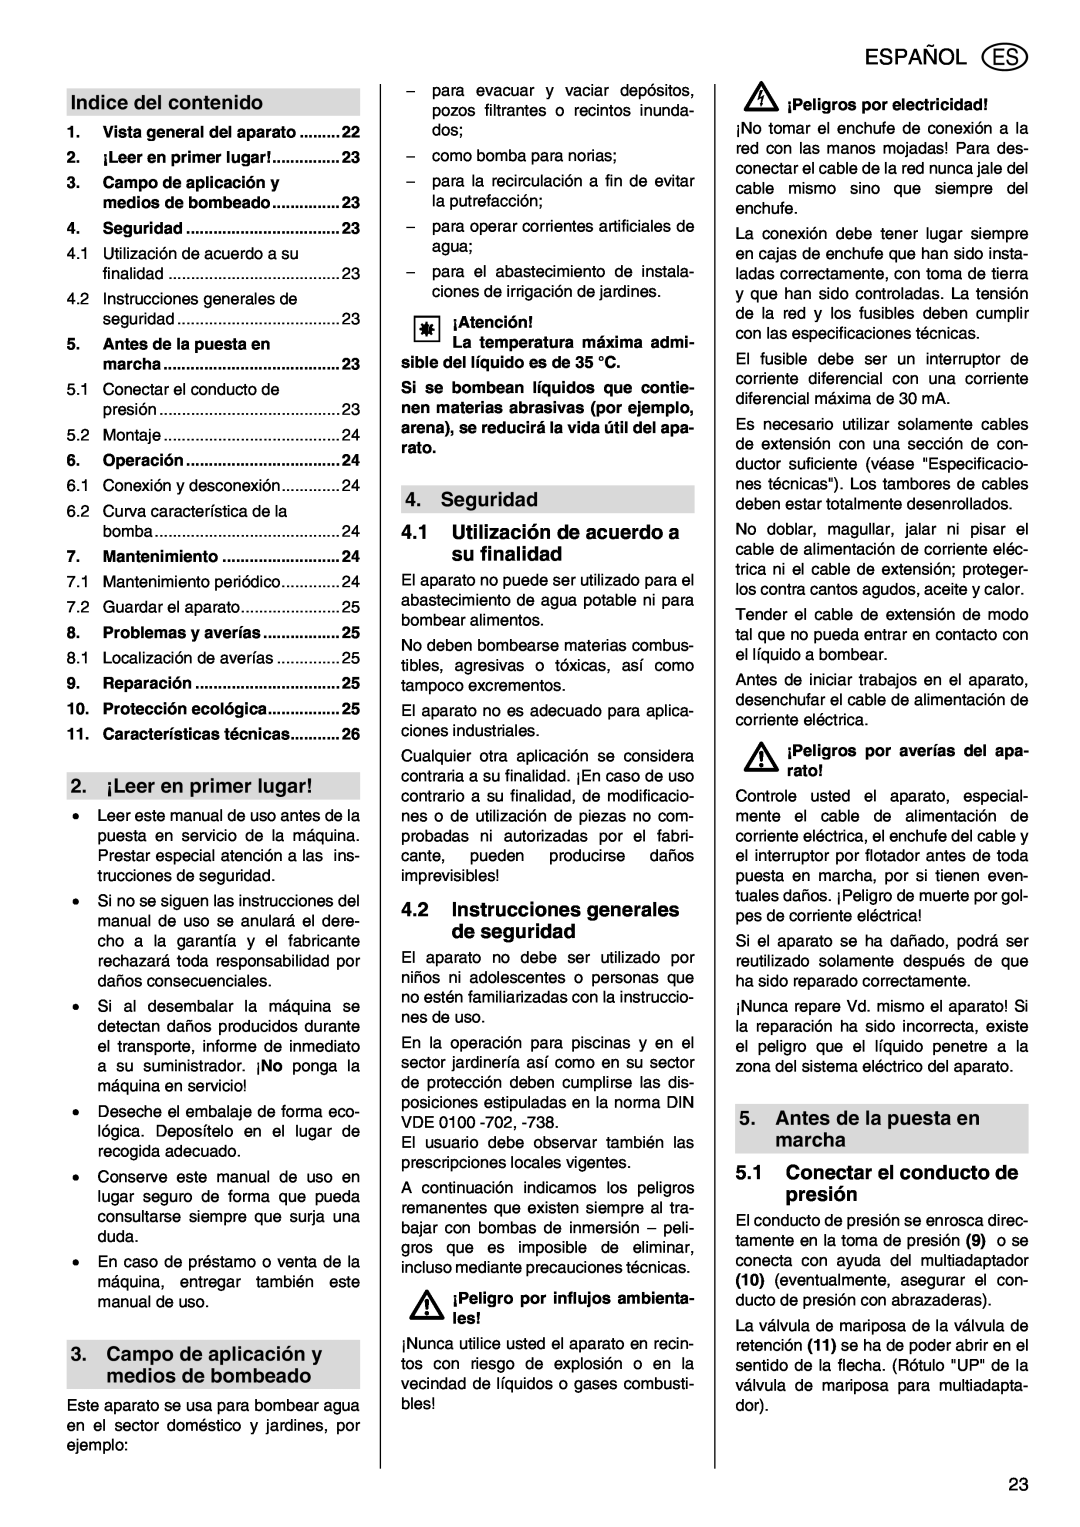 Metabo TDP 7500 S manual Español, Indice del contenido, 2. ¡Leer en primer lugar, Campo de aplicación y medios de bombeado 